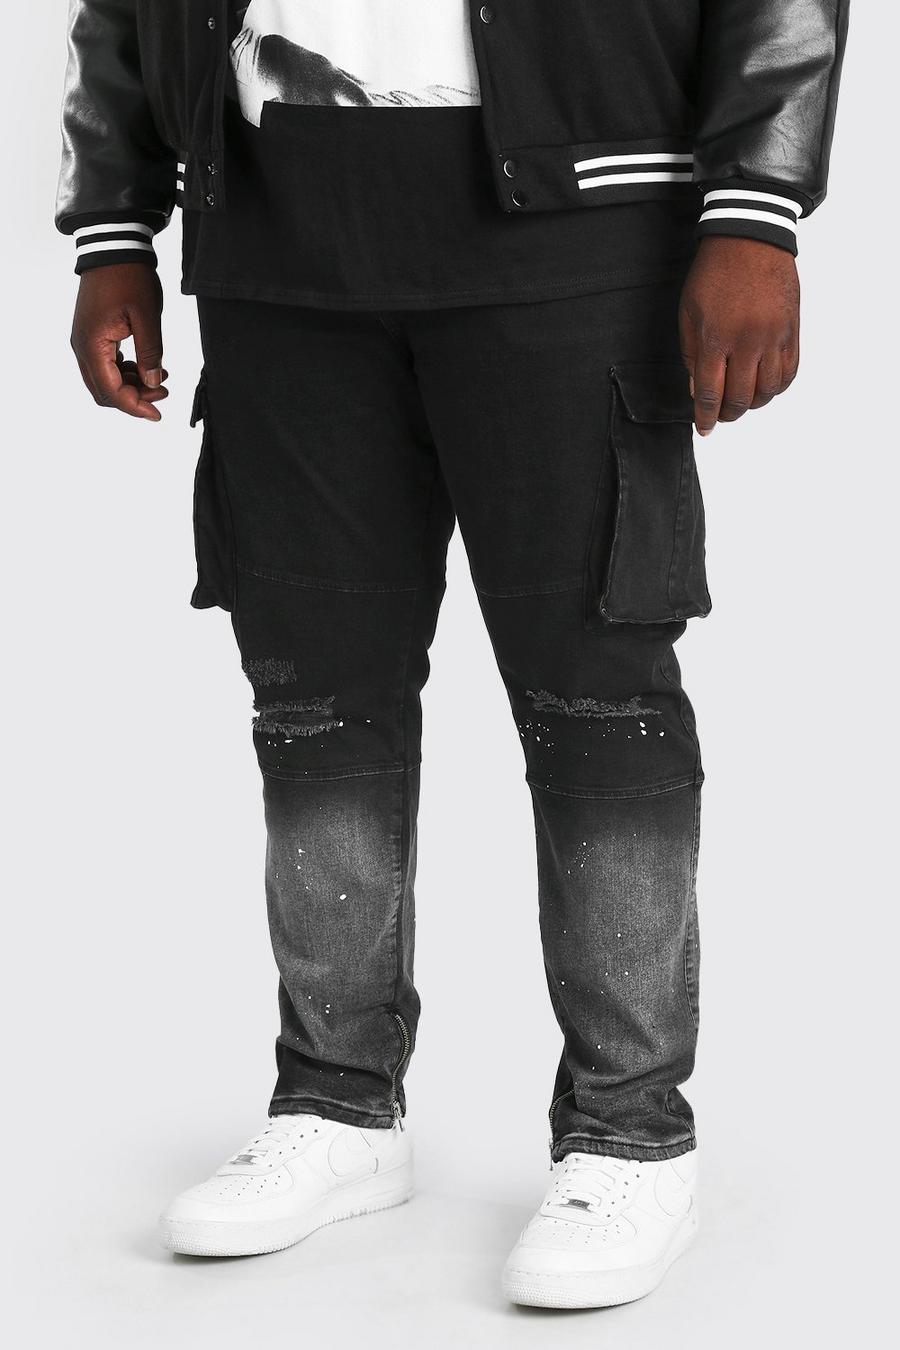 שחור סקיני ג'ינס בסגנון דגמ"ח עם כתמי צבע לגברים גדולים וגבוהים image number 1